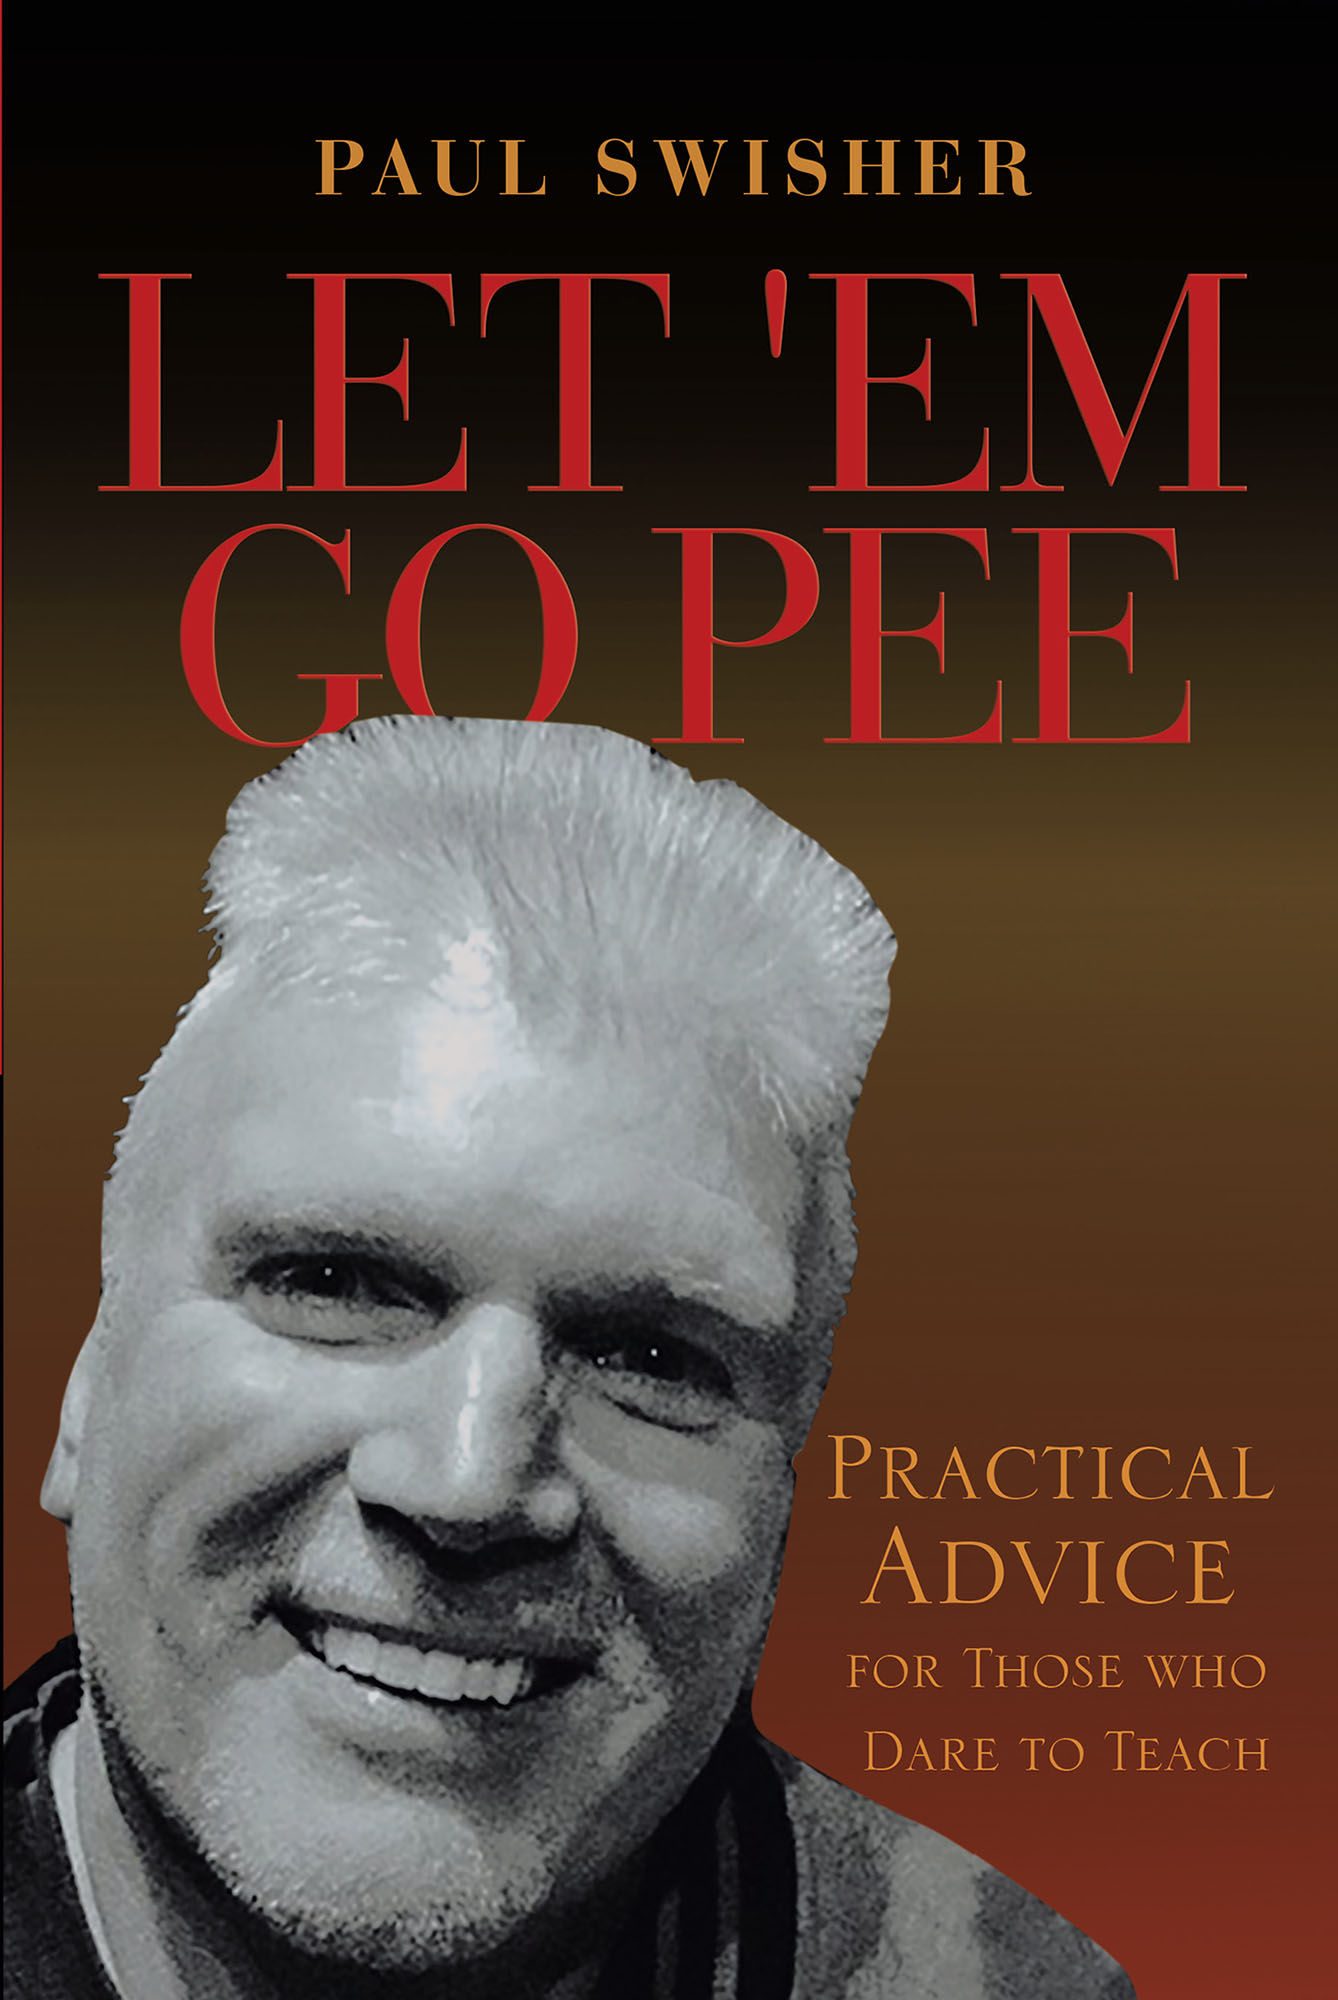 Let 'Em Go Pee Cover Image